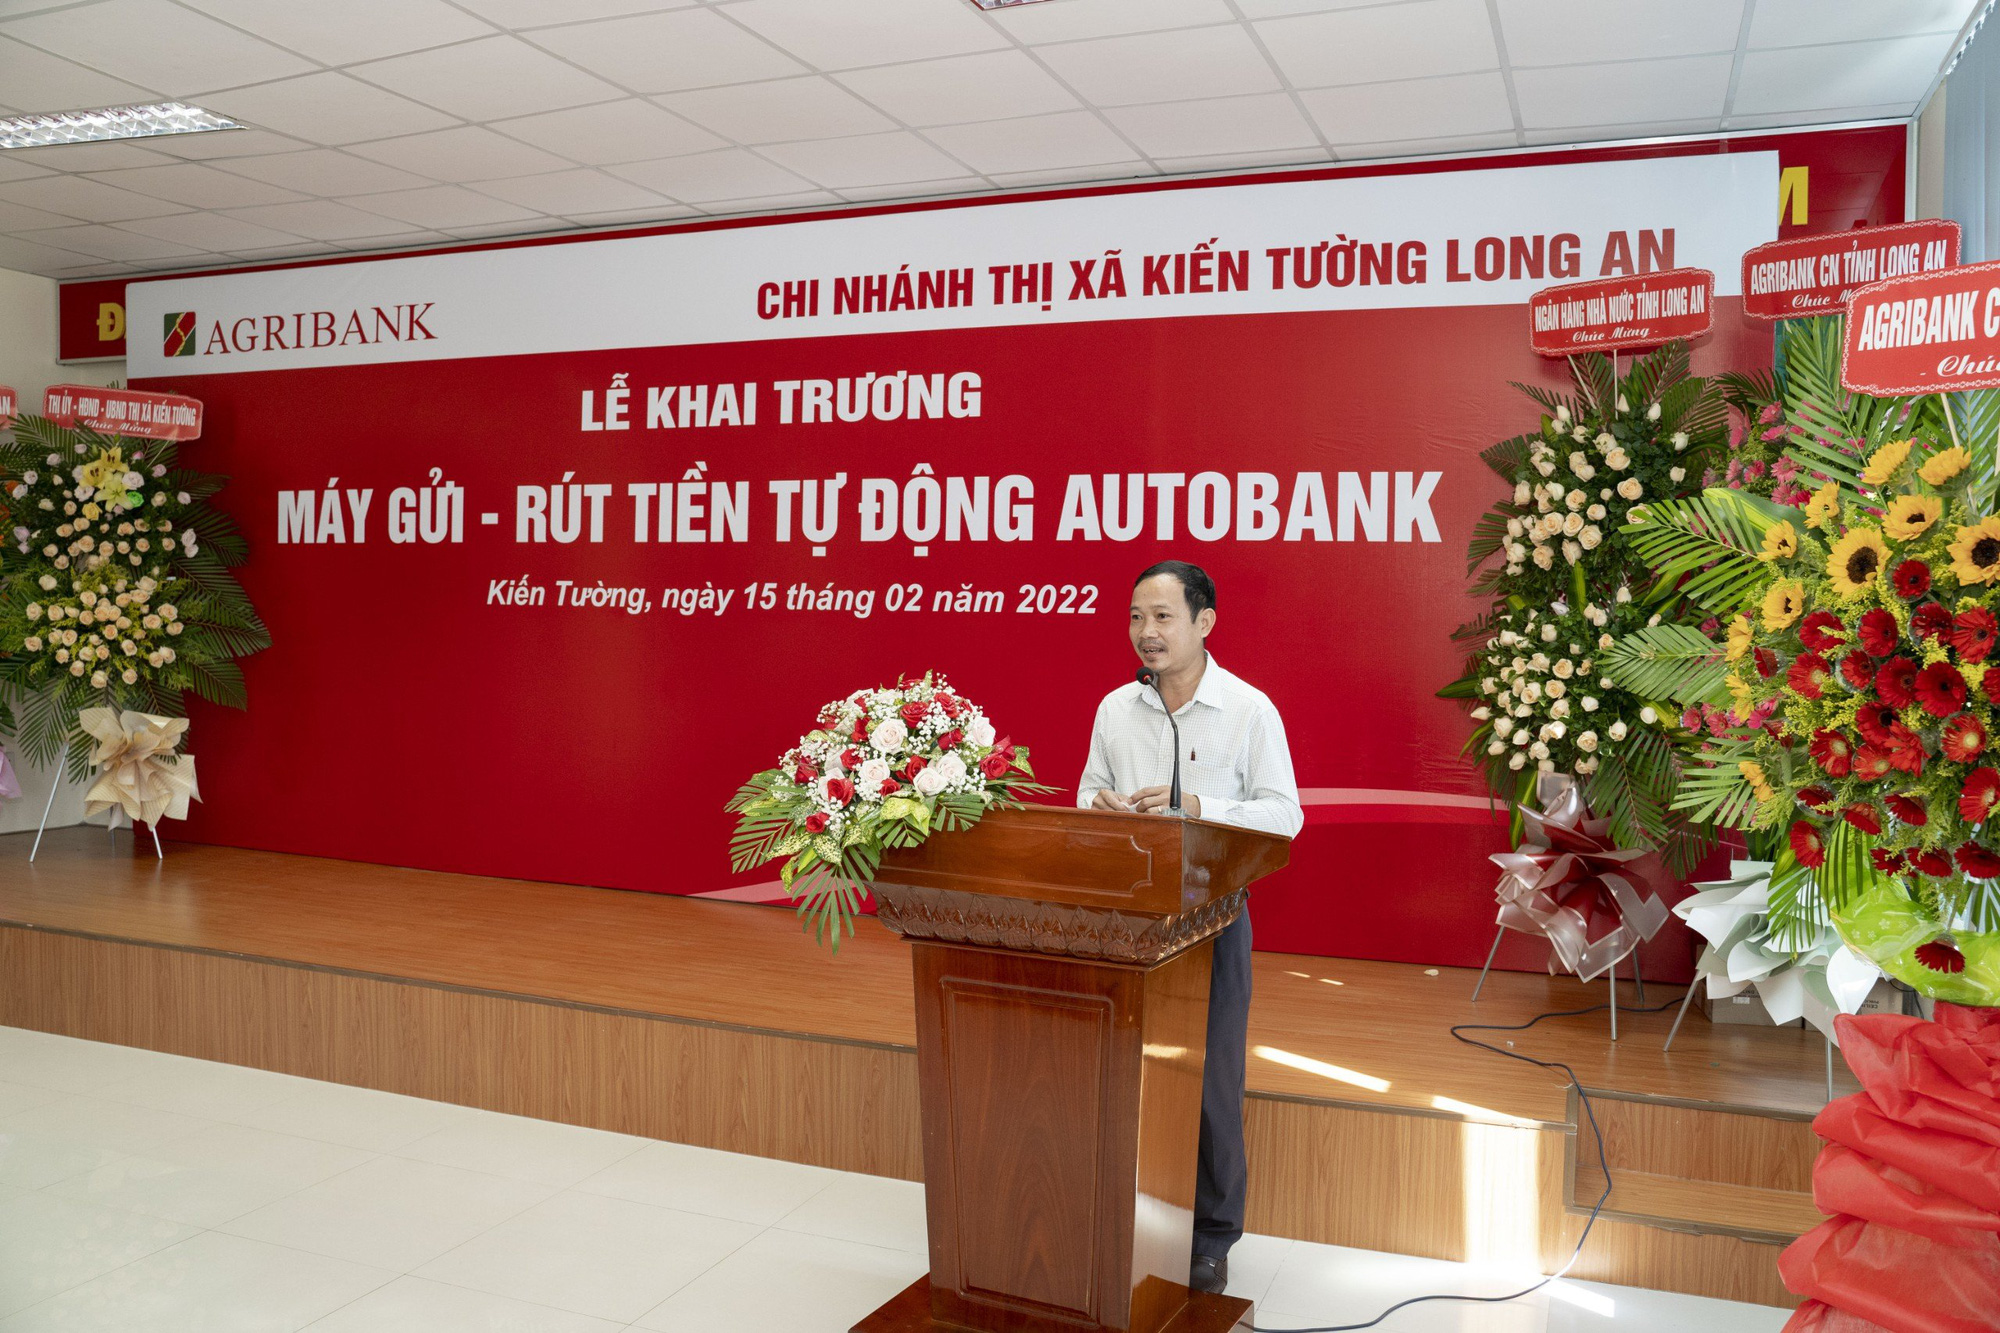 Agribank chi nhánh Long An khai trương ngân hàng tự động Autibank thứ 5 - Ảnh 3.